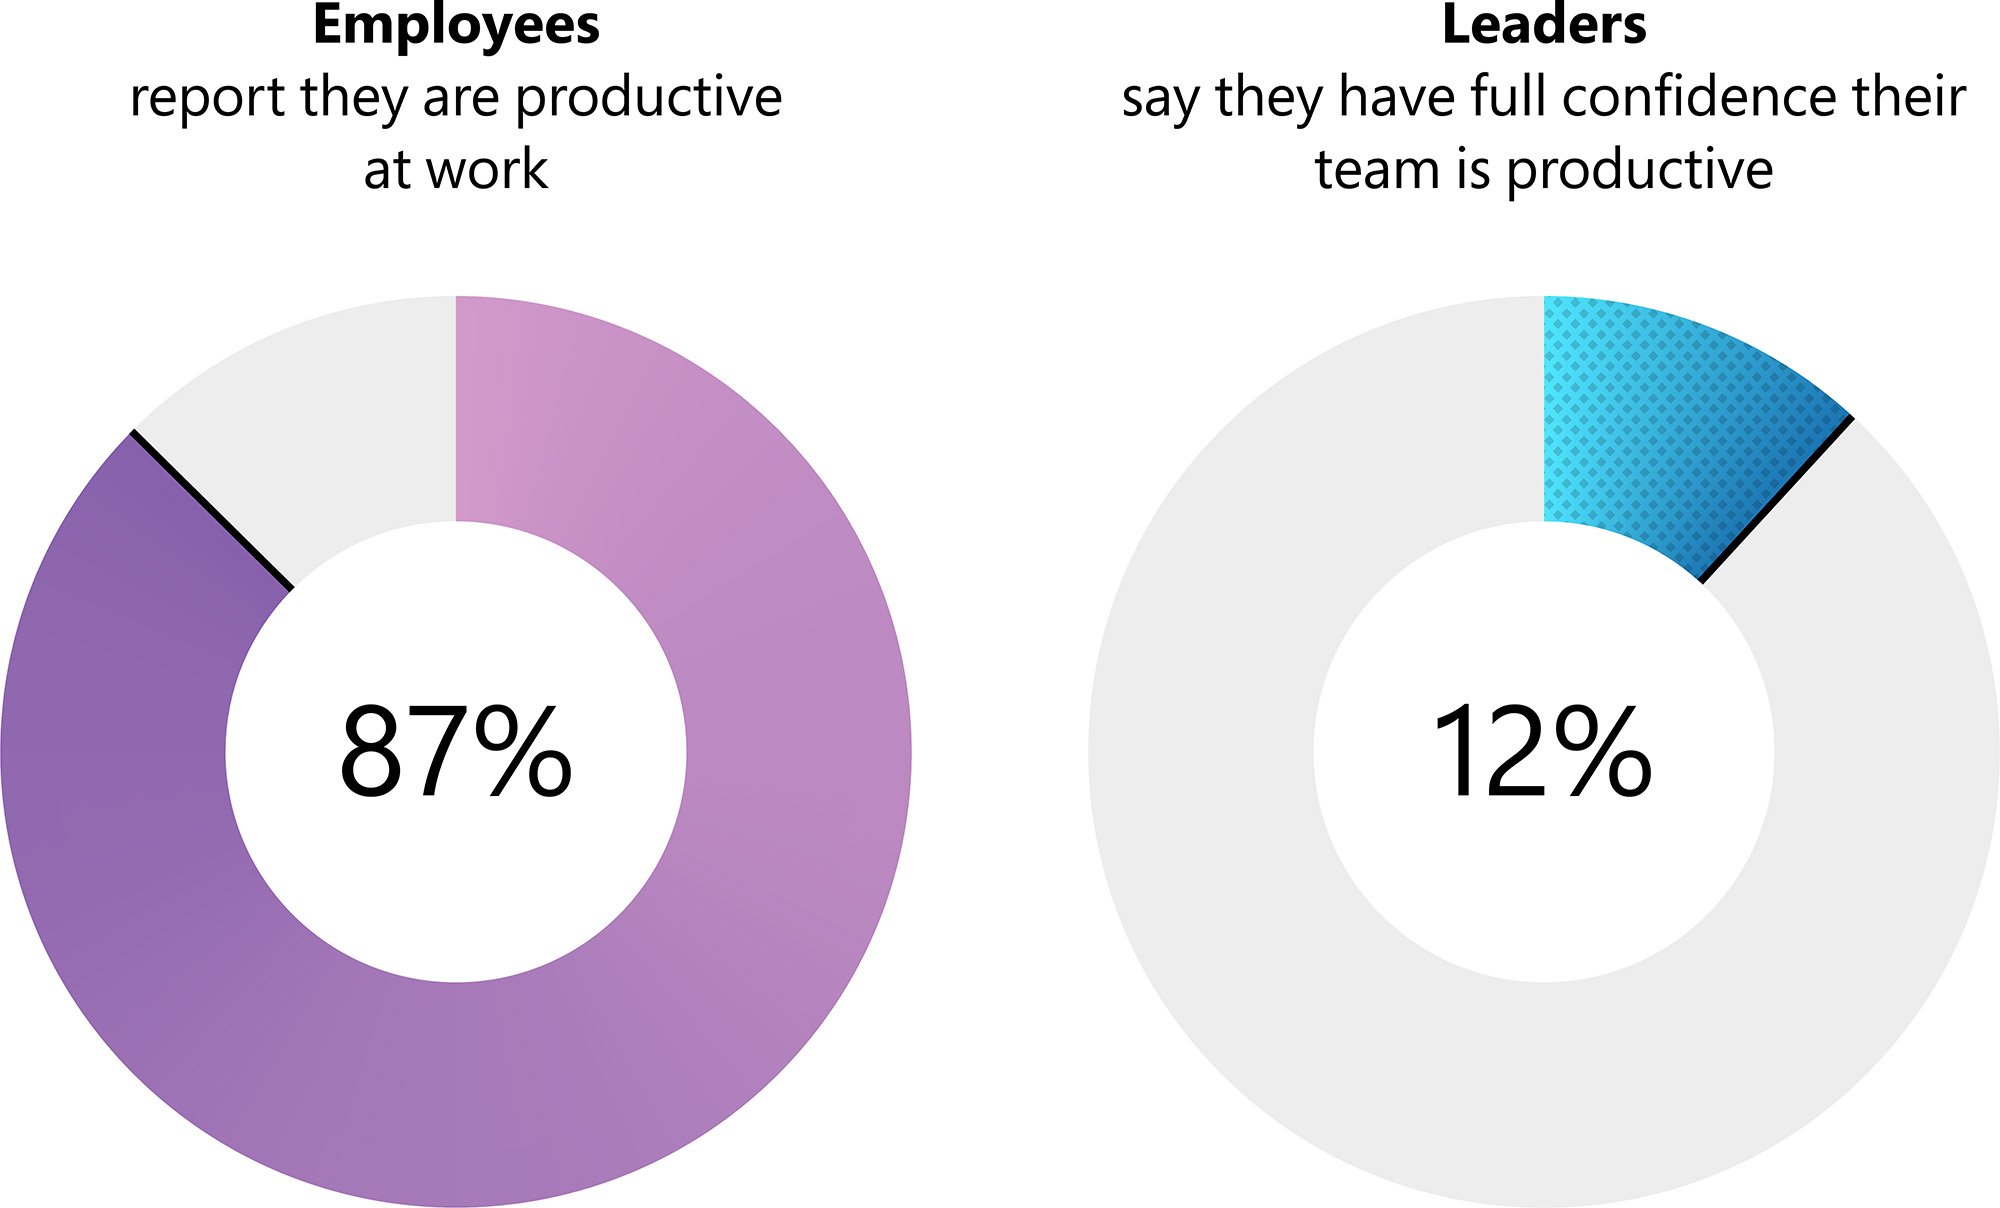 員工認為領導階層和他們對於工作效率的認知在極大差異。